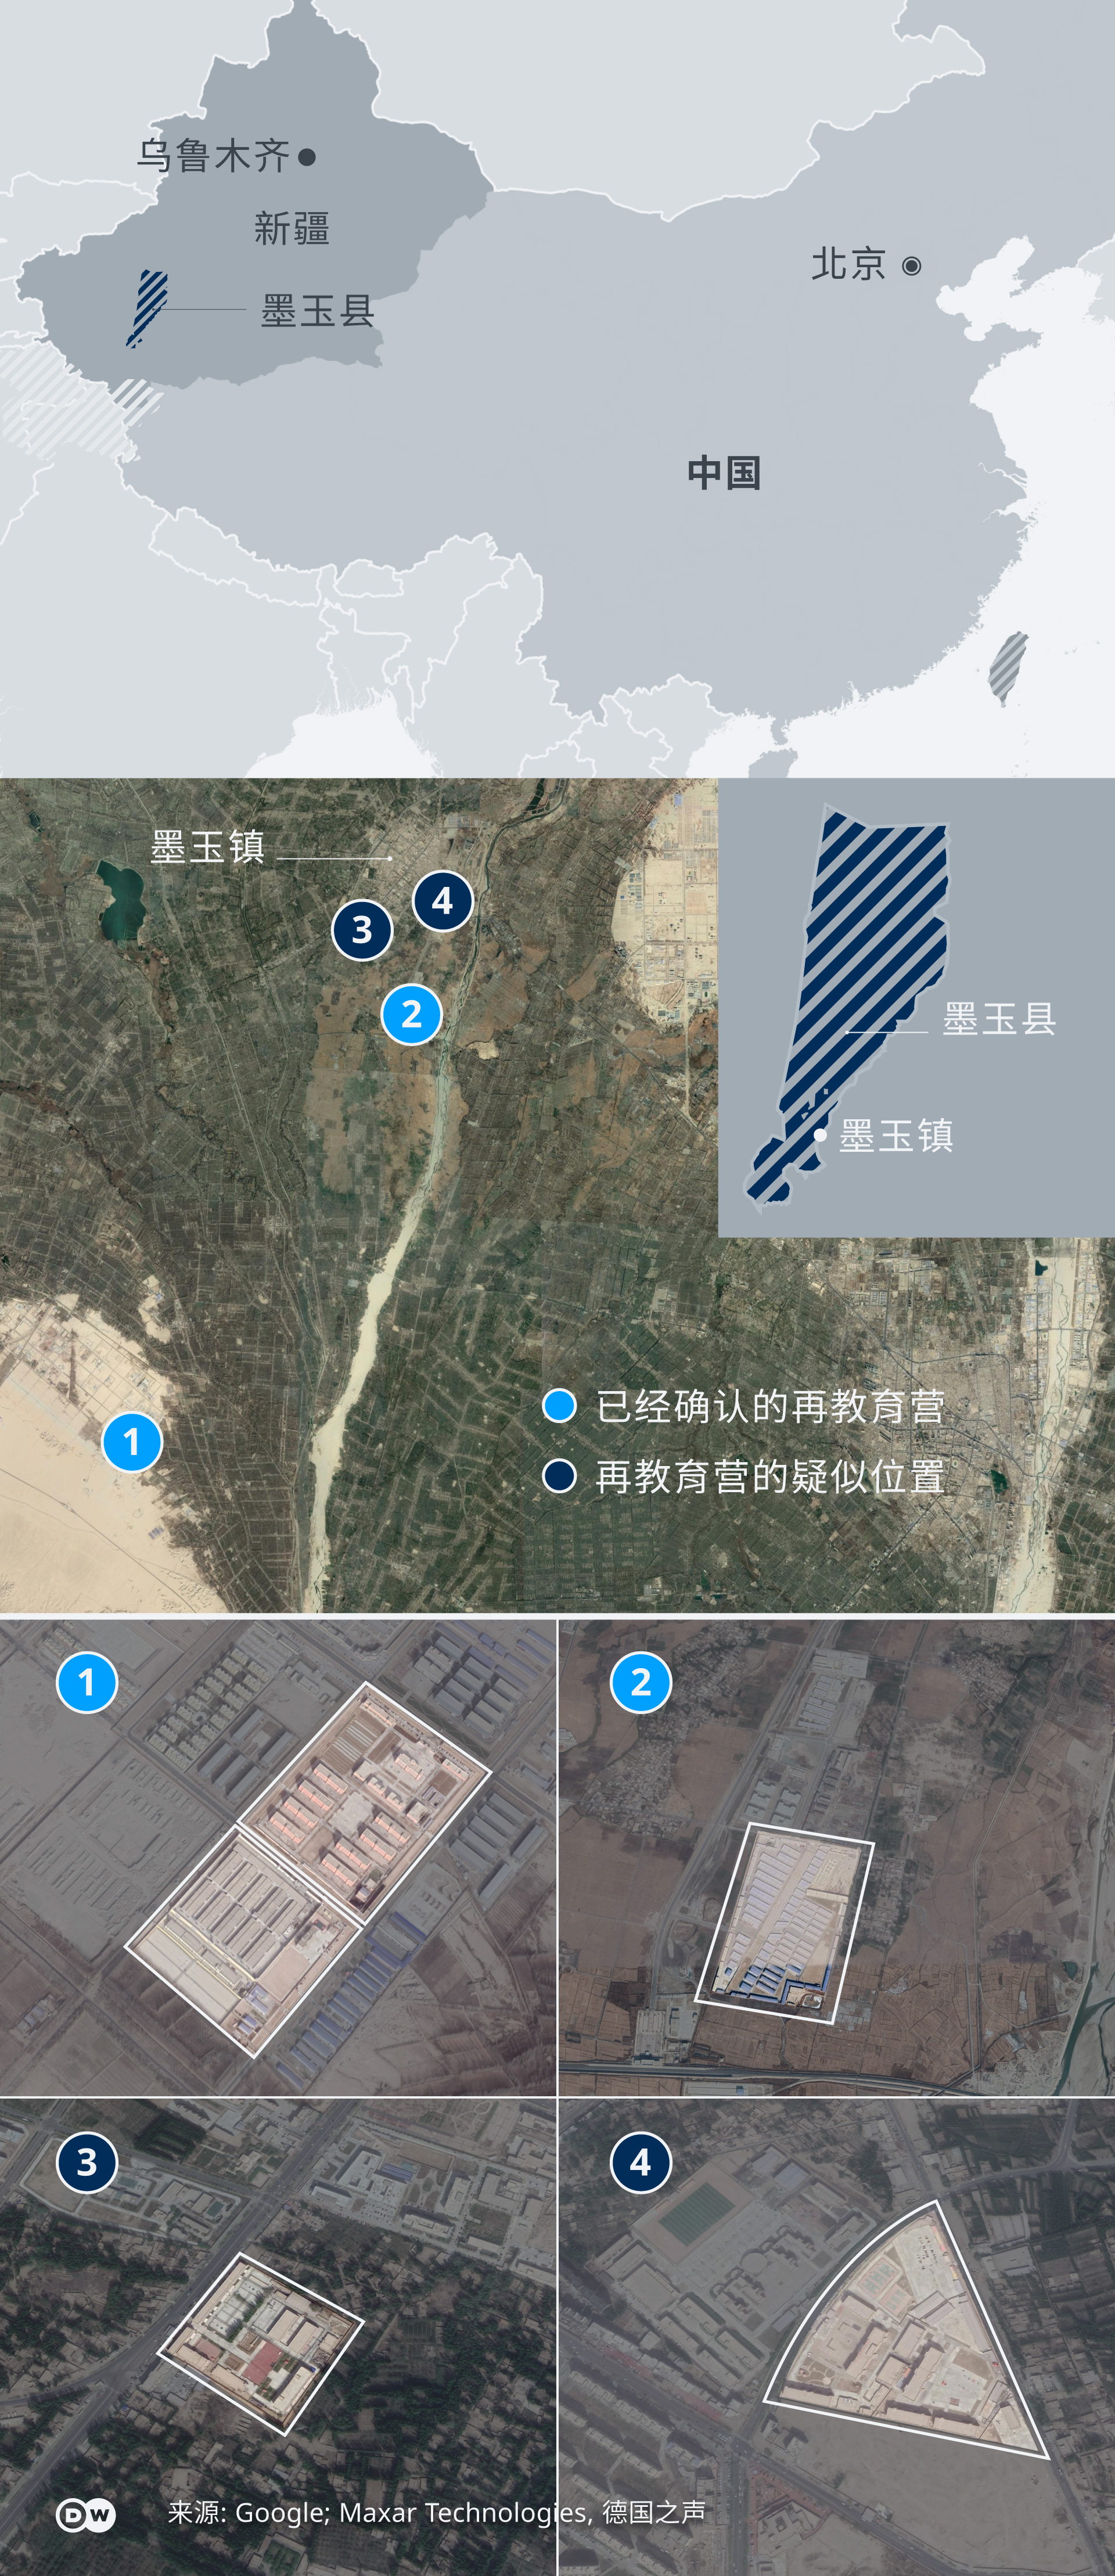 DW Investigativ Projekt: Uiguren Umerziehungslager in China !!!ACHTUNG SPERRFRIST 17.02.2020 (17.00 Uhr)!!! ZH